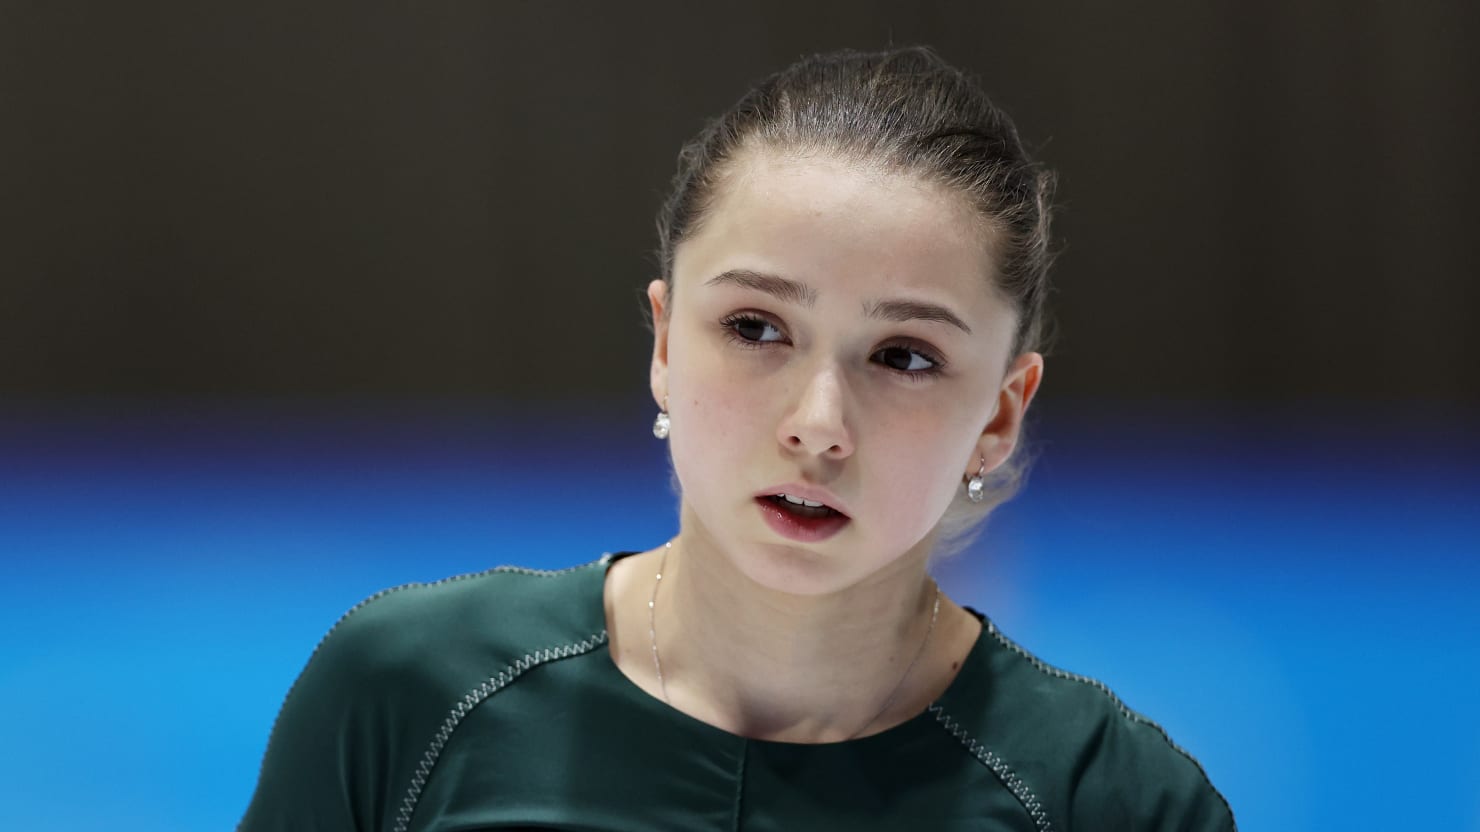 El equipo de EE. UU. sorprendido de que Kamila Valieva de Rusia pueda patinar a pesar de la prueba de drogas fallida